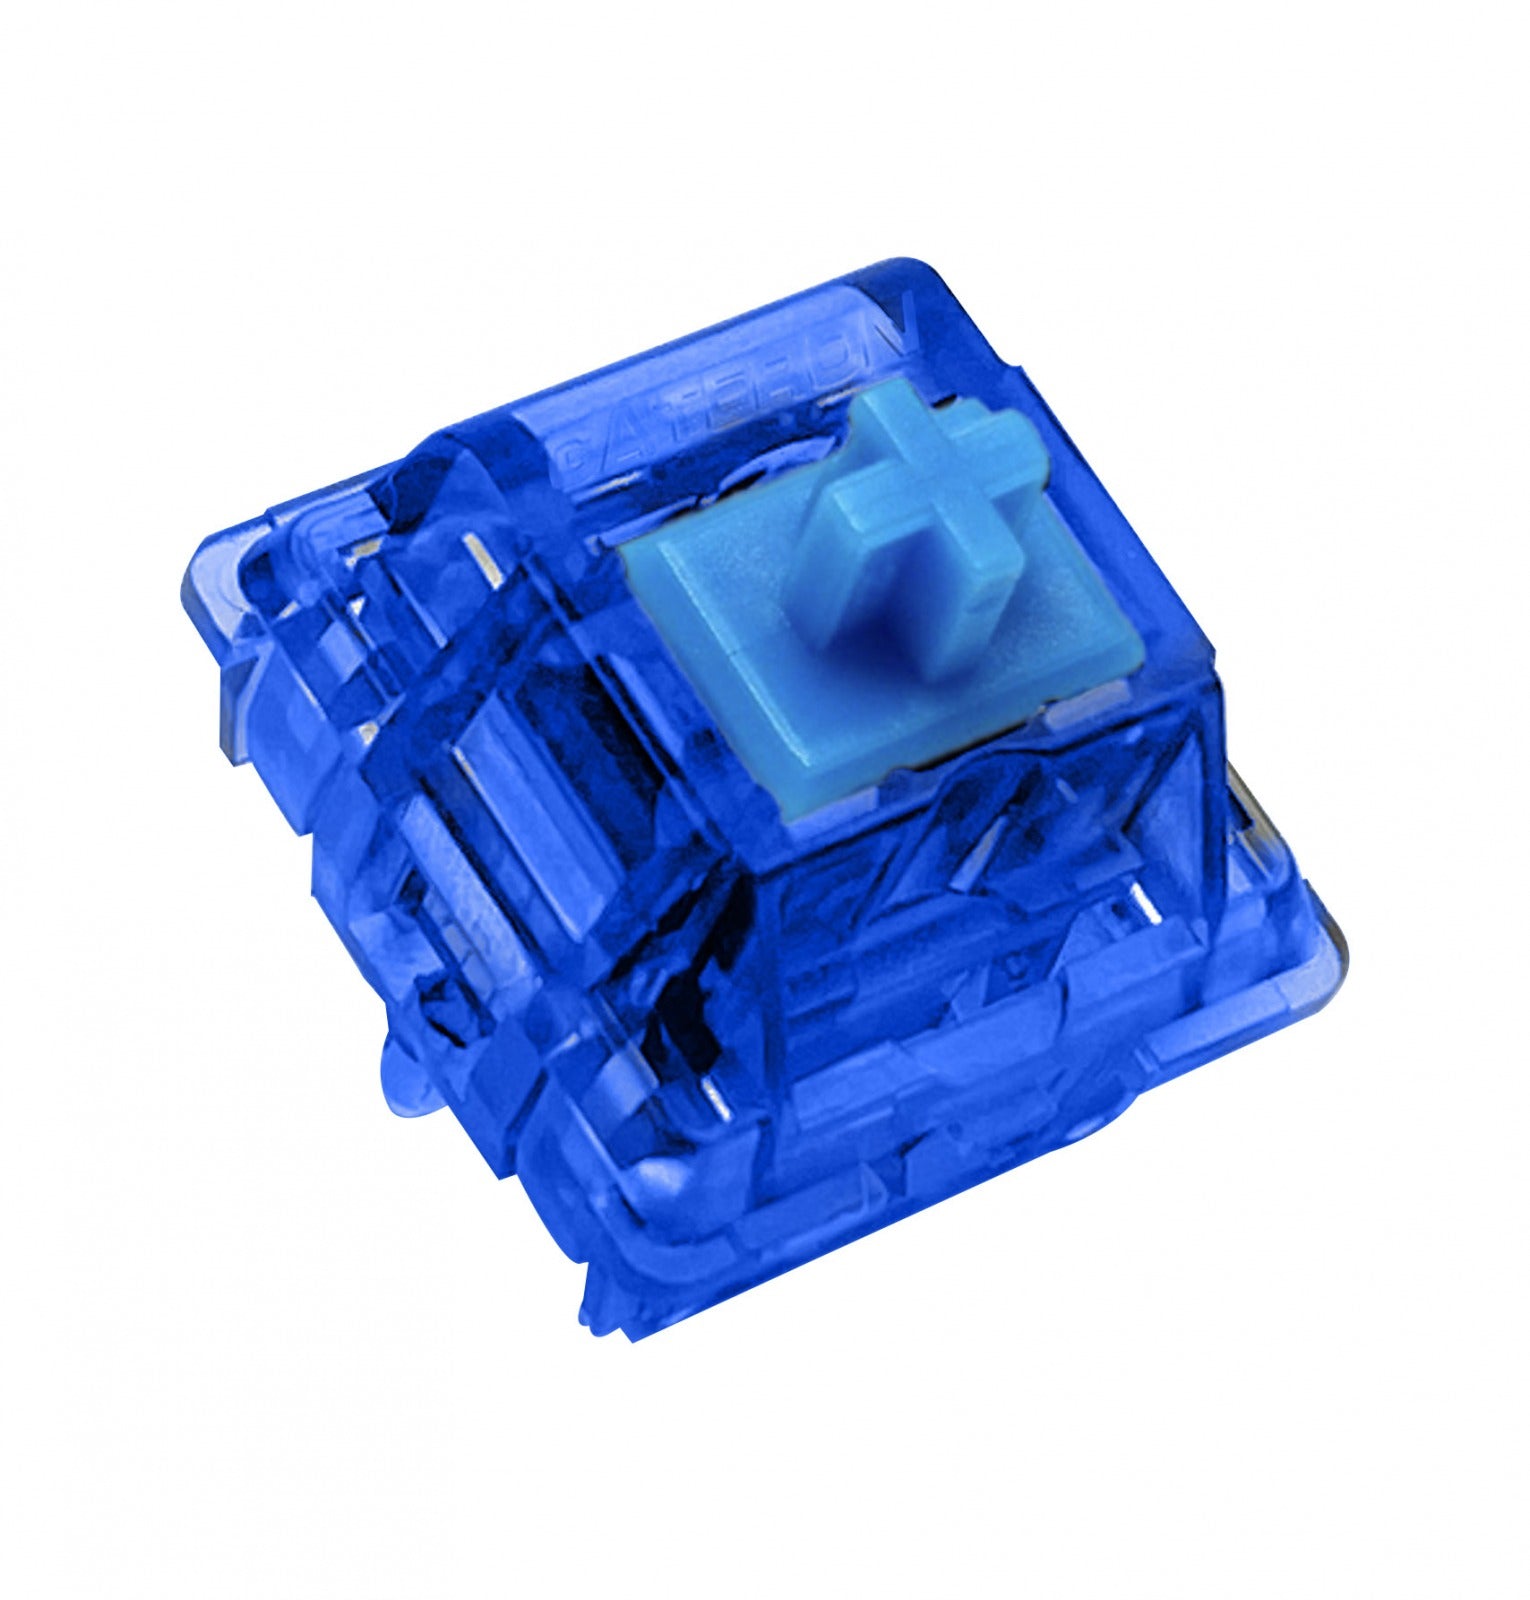 Gateron Ink Blue V2 75g Clicky PCB Mount Switch MKZL8VDP9J |0|